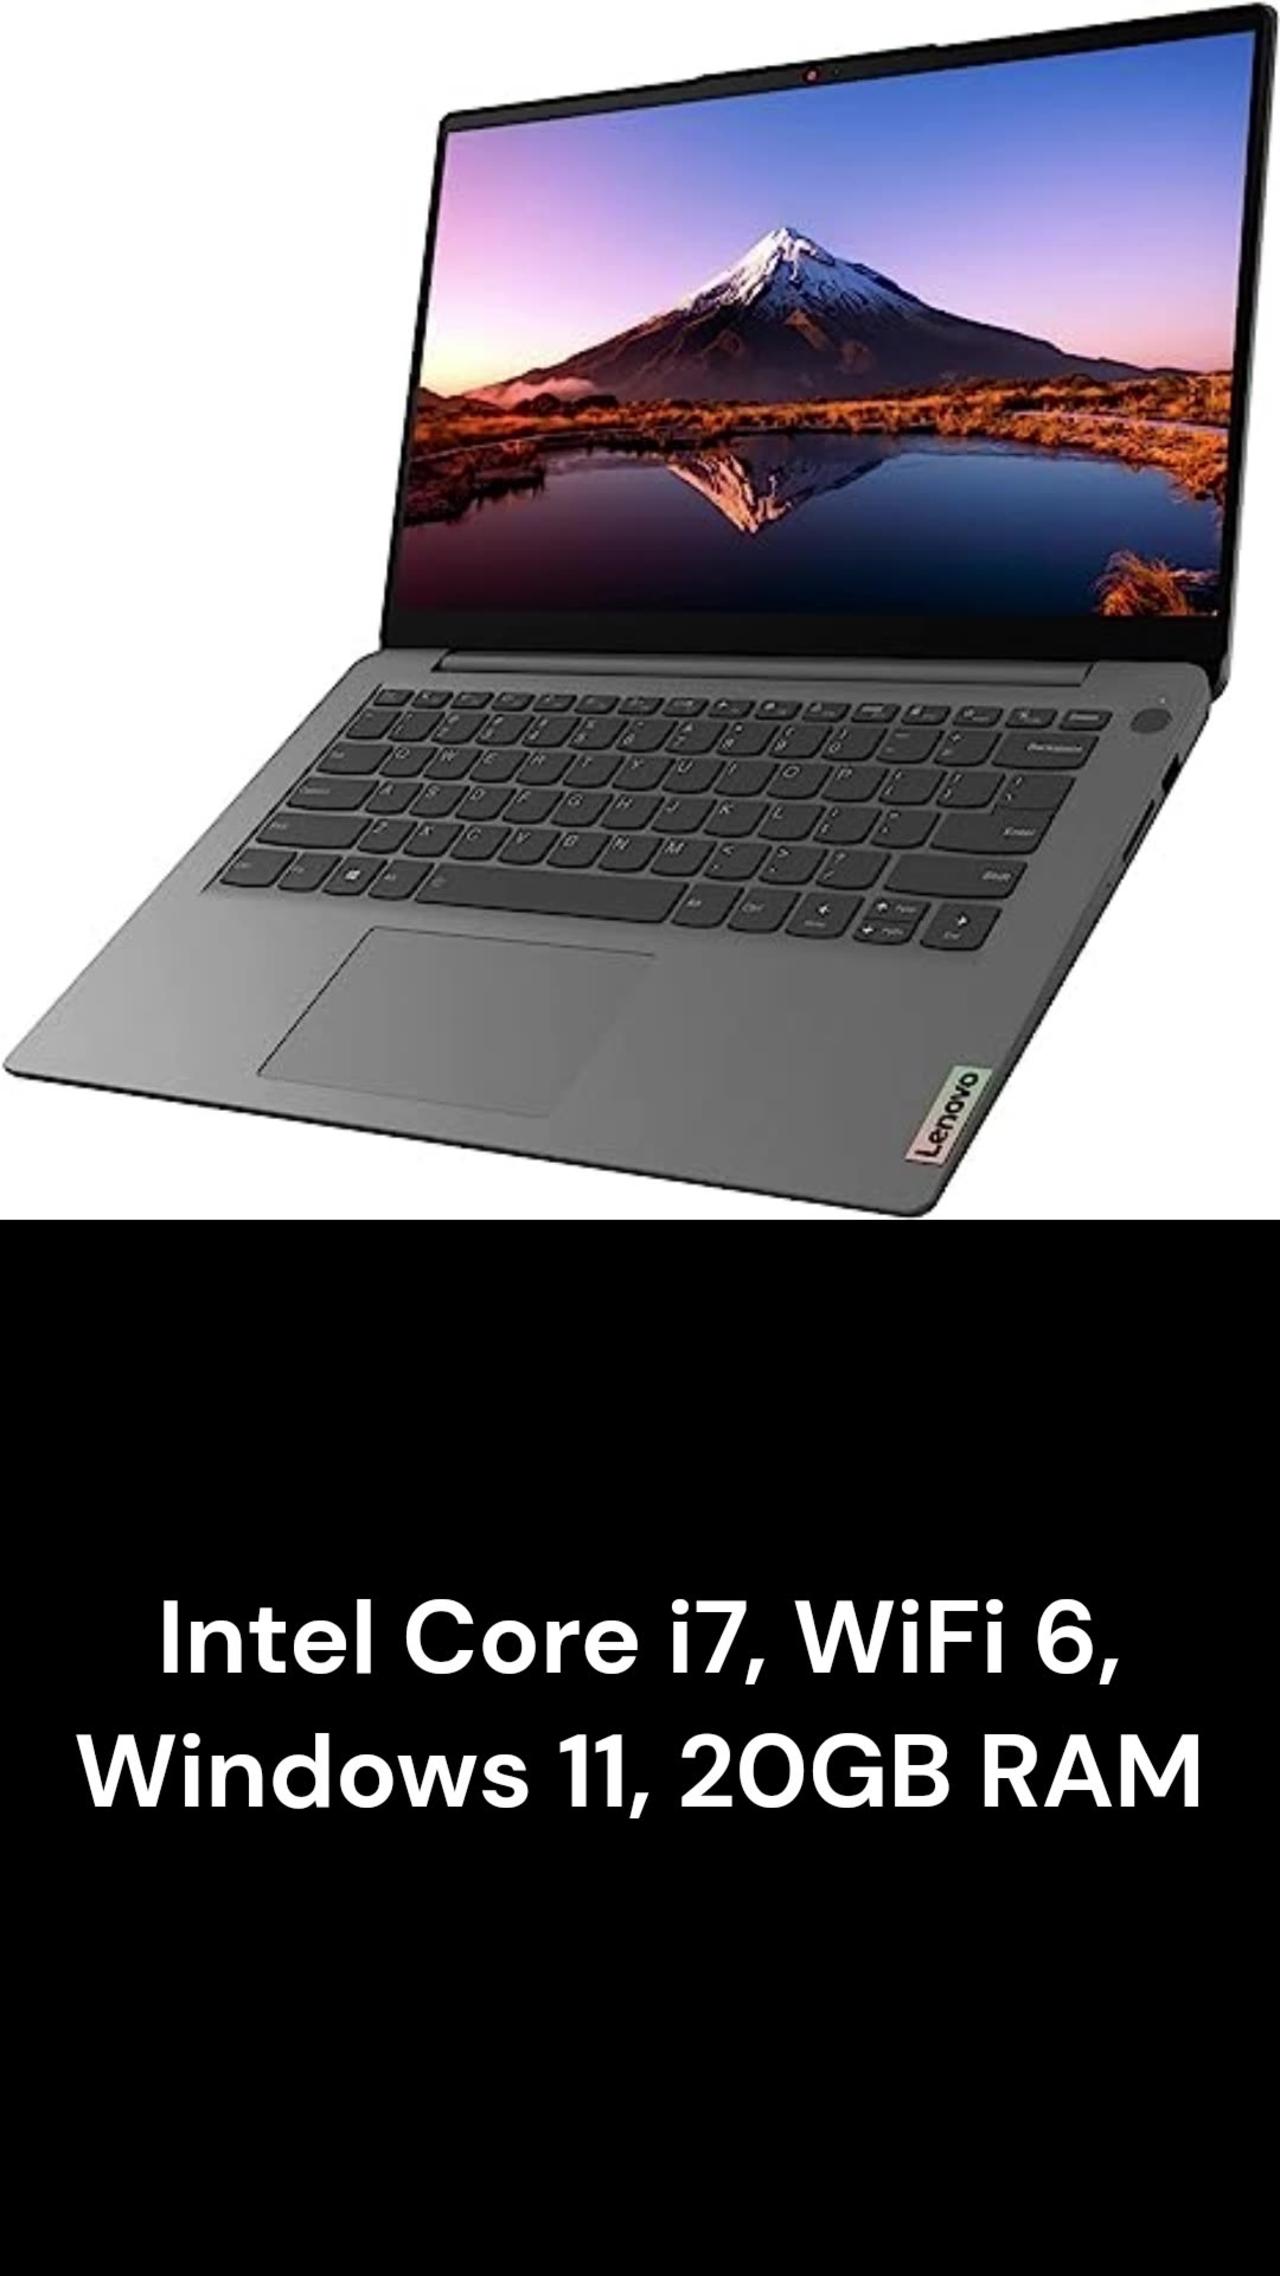 Lenovo New Ideapad 3 14inch FHD Portable Laptop #lenovo #laptop